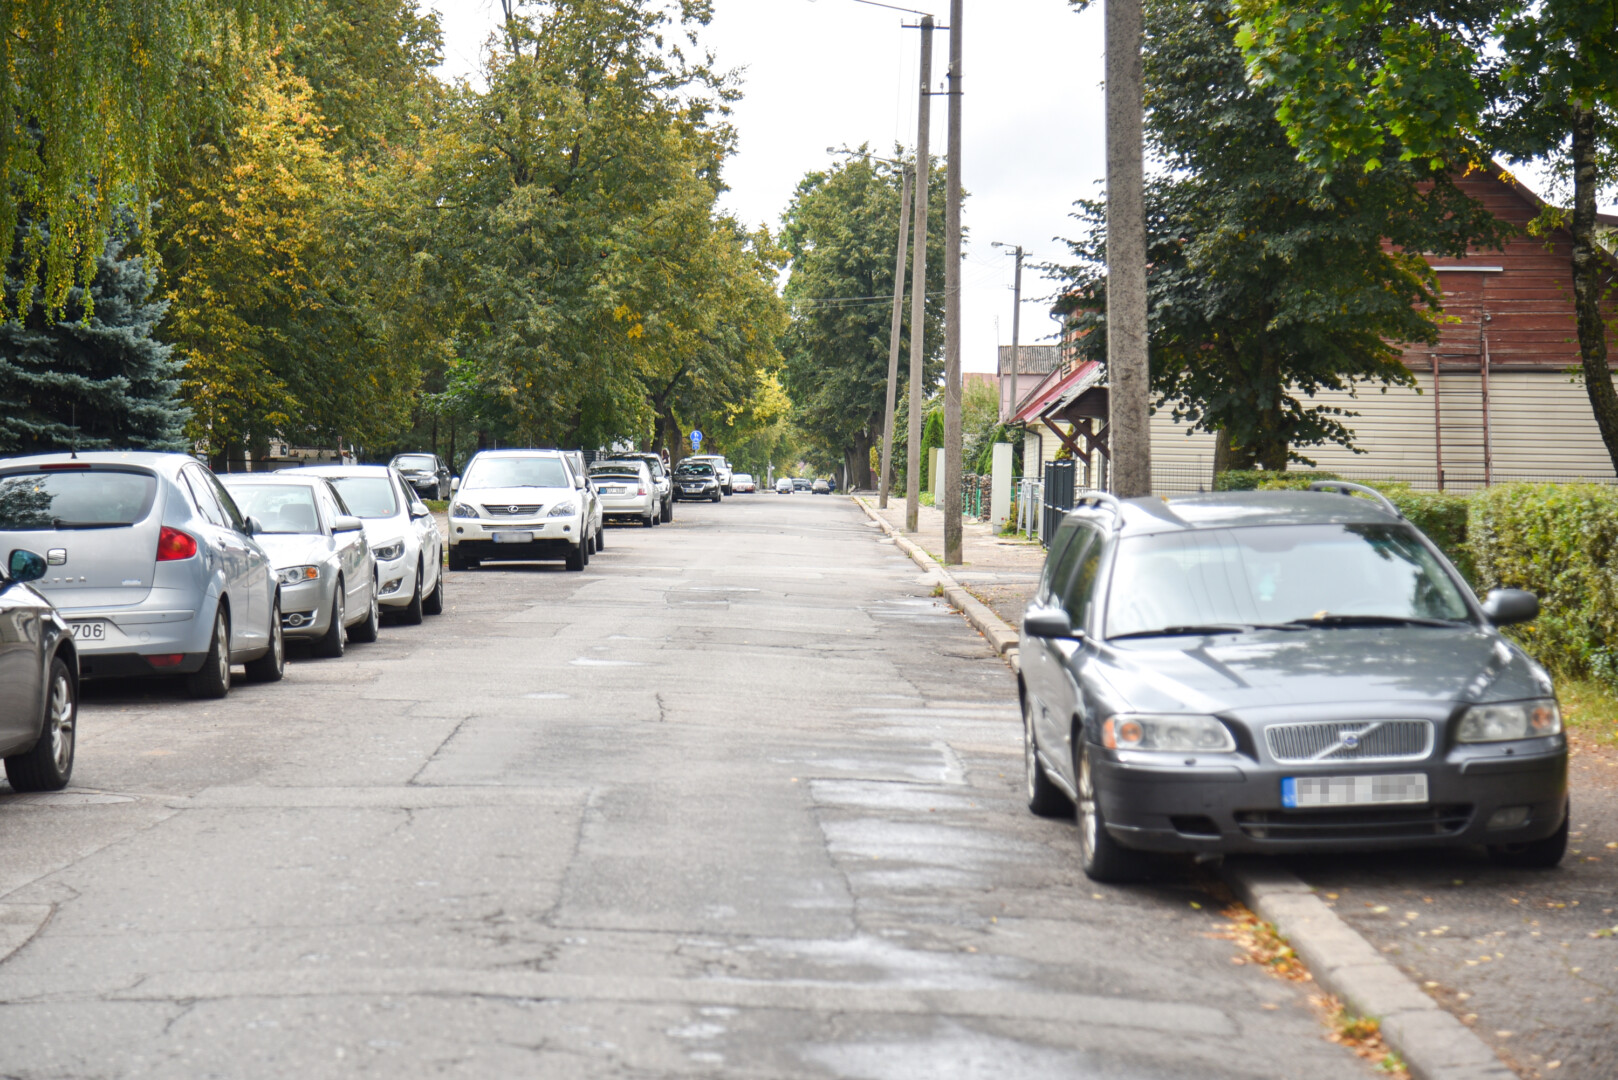 Nevėžio gatvė tapo dar viena vieta mieste, kur automobiliai rikiuojami nepaisant Kelių eismo taisyklių. P. ŽIDONIO nuotr.